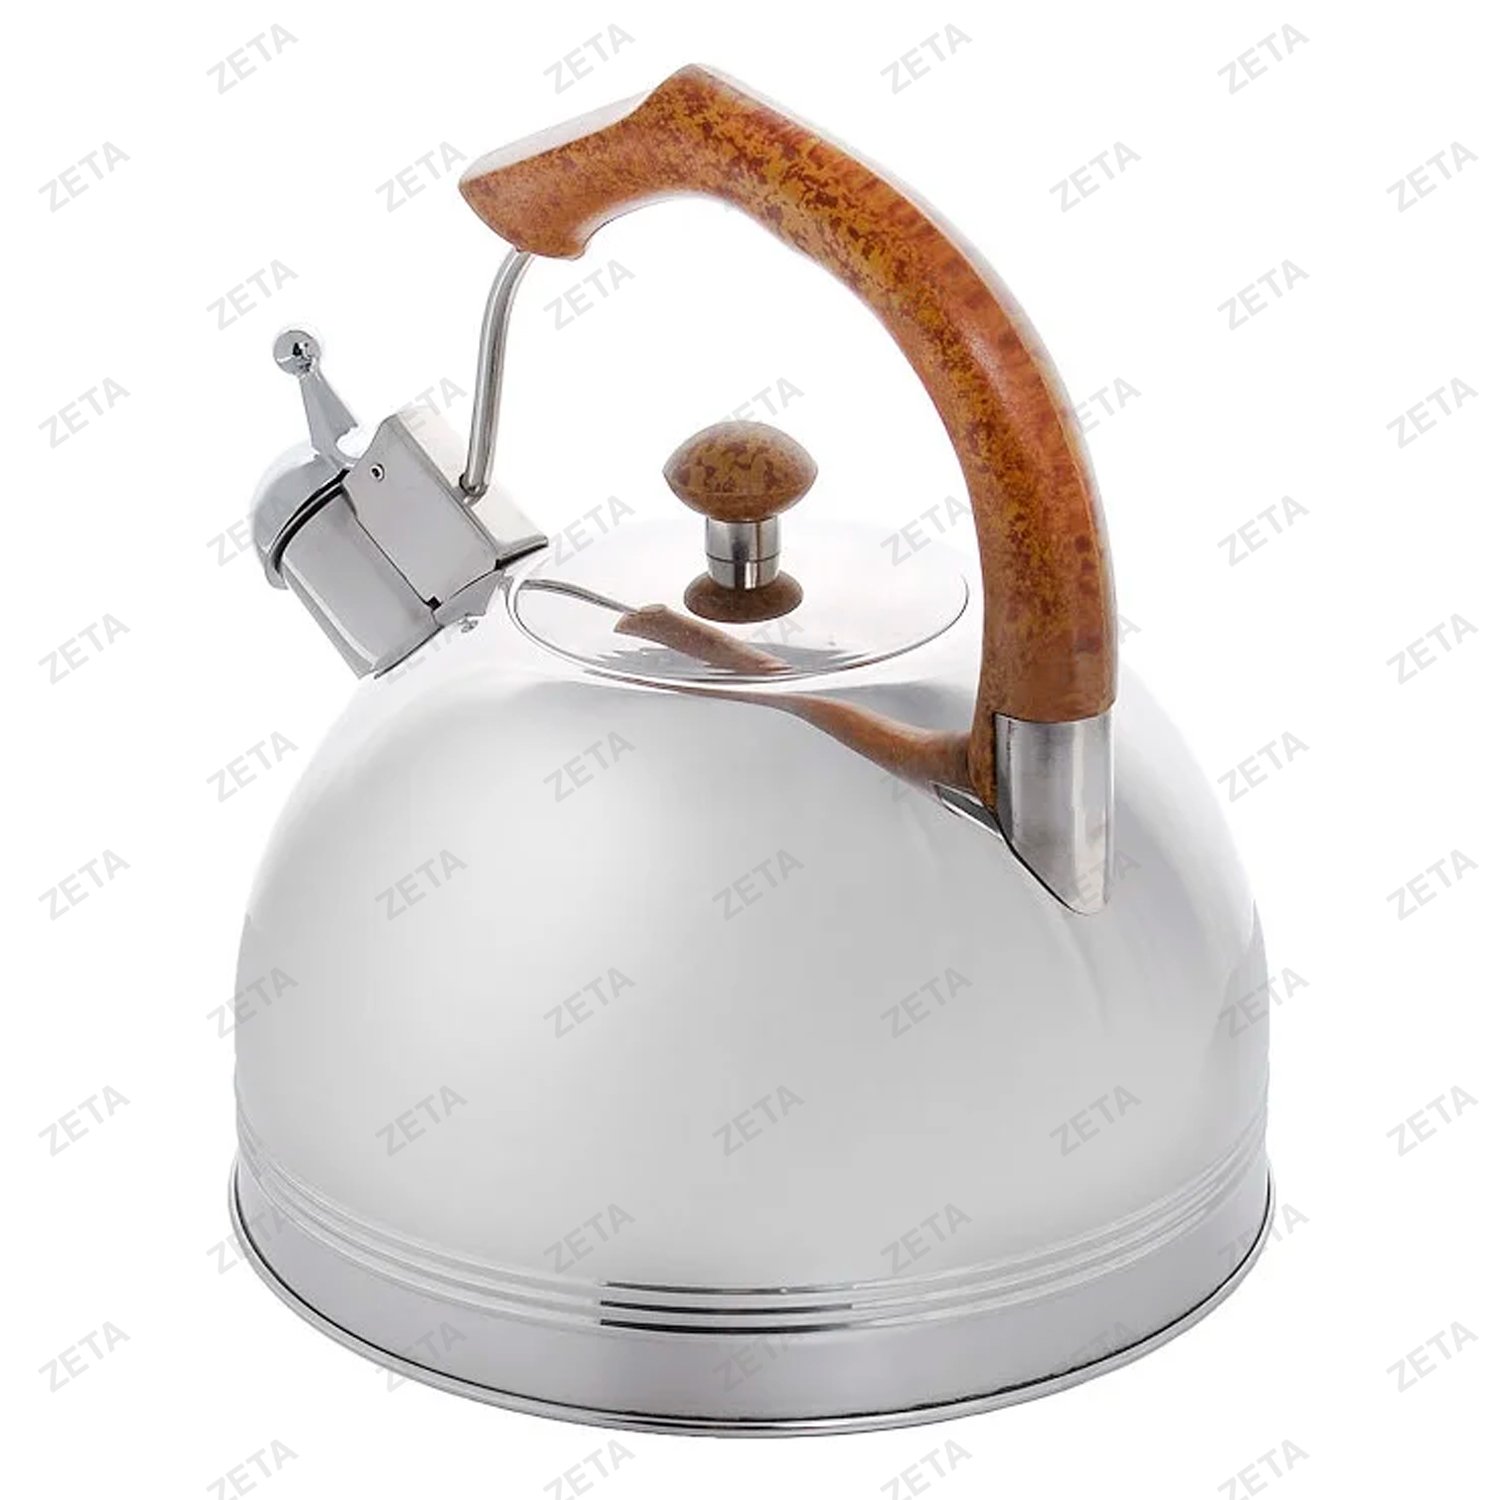 Чайник со свистком LKD-003 3,5 л. серебристый/коричневый Appetite - изображение 3